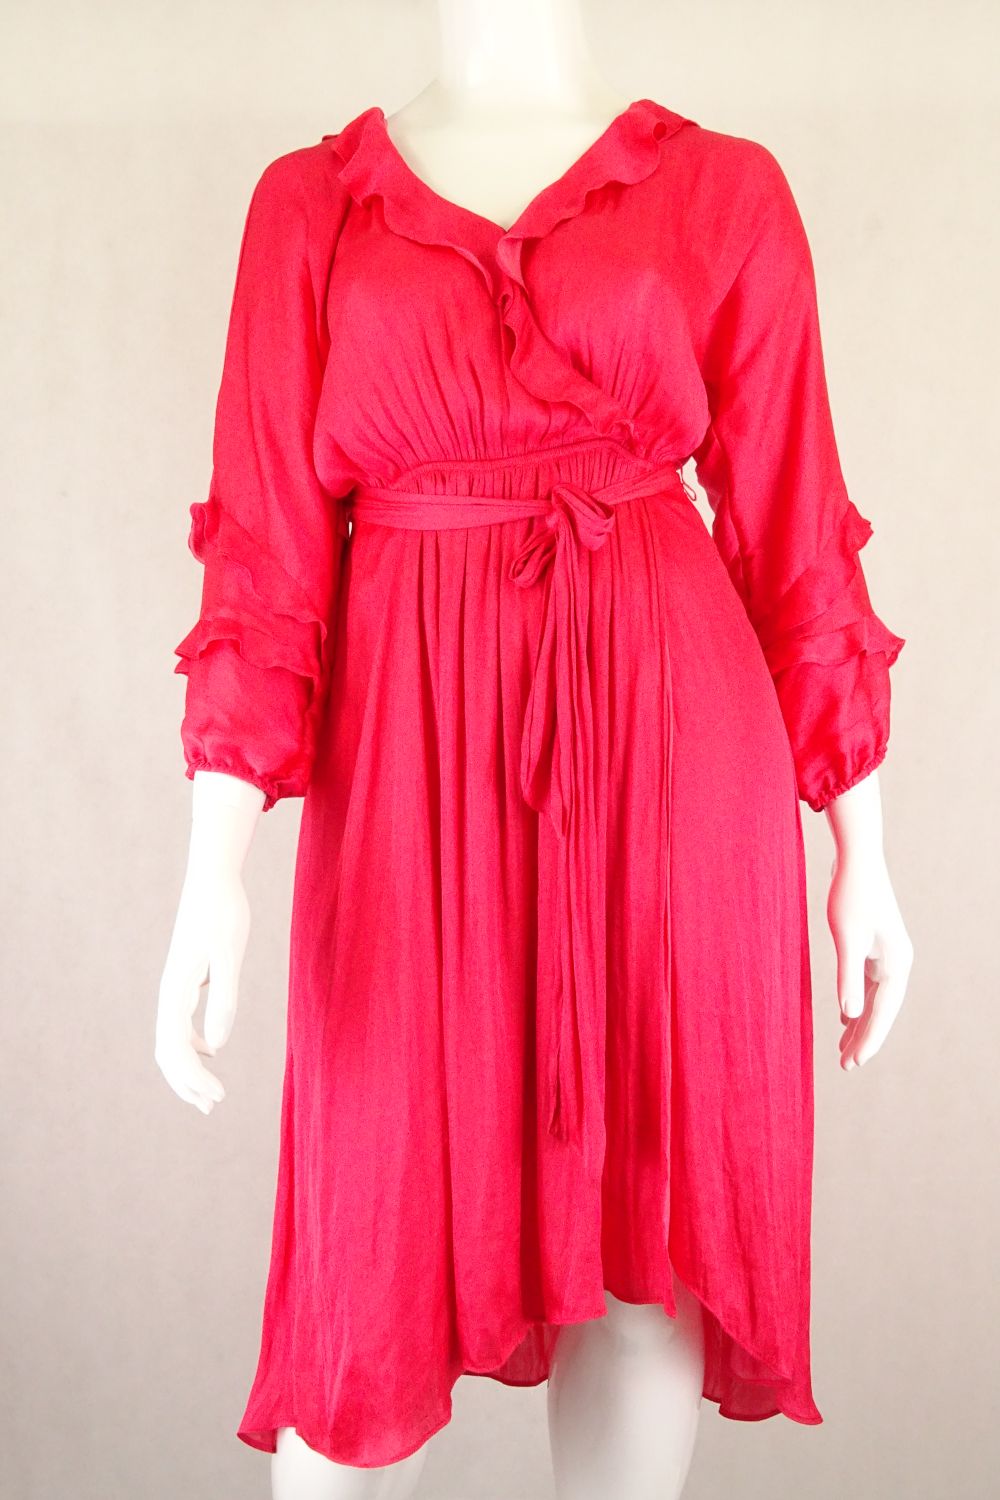 Leona By Leona Edmiston Red Dress 14